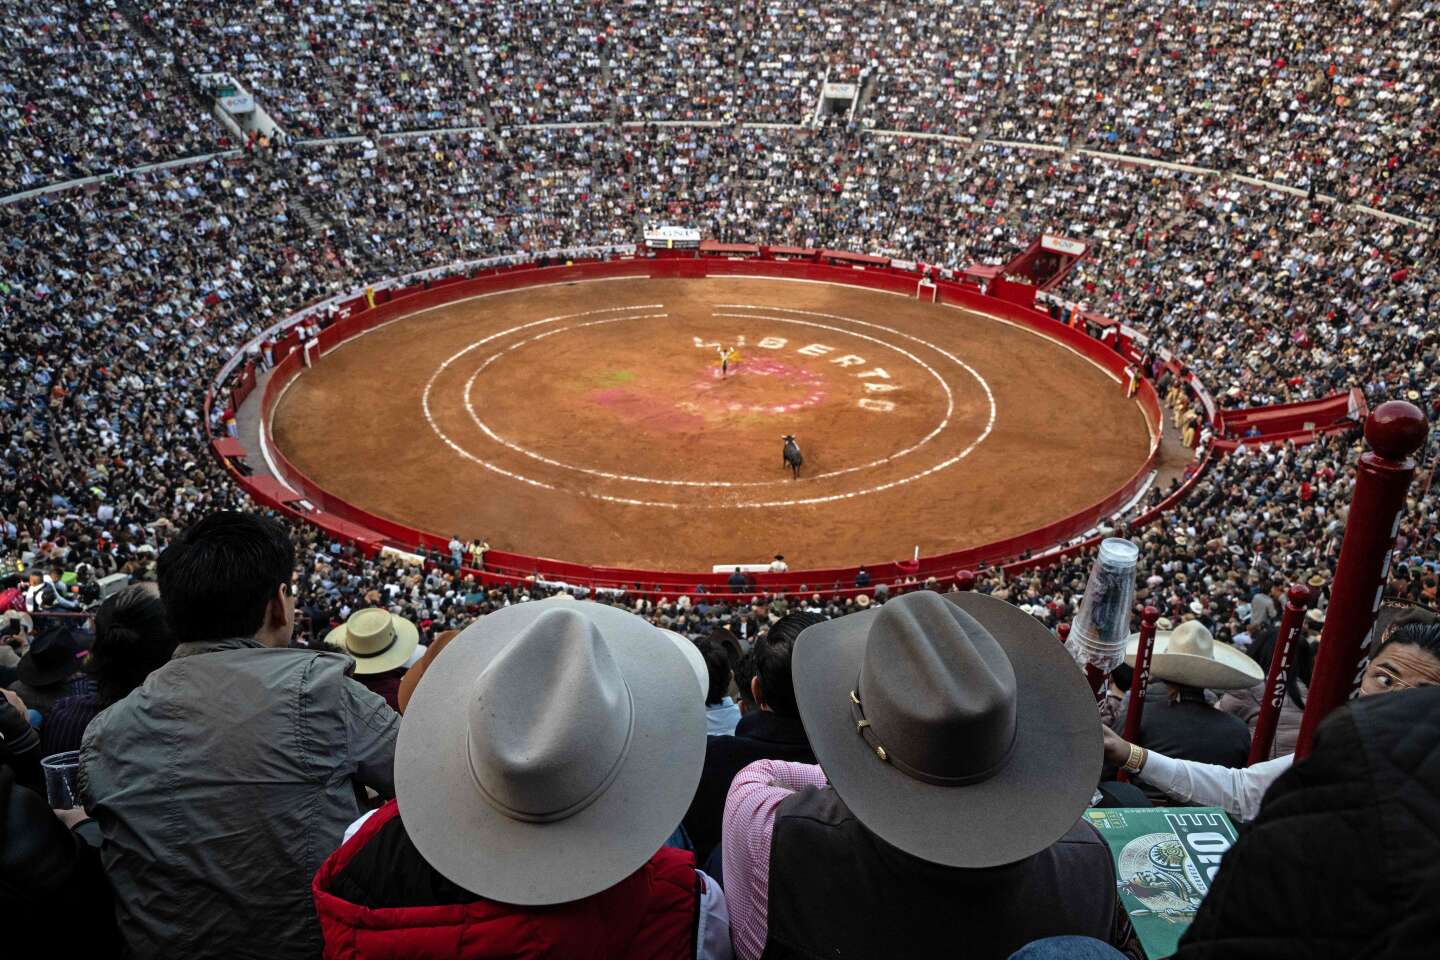 Les corridas réautorisées à Mexico, énième rebondissement d’une controverse nationale